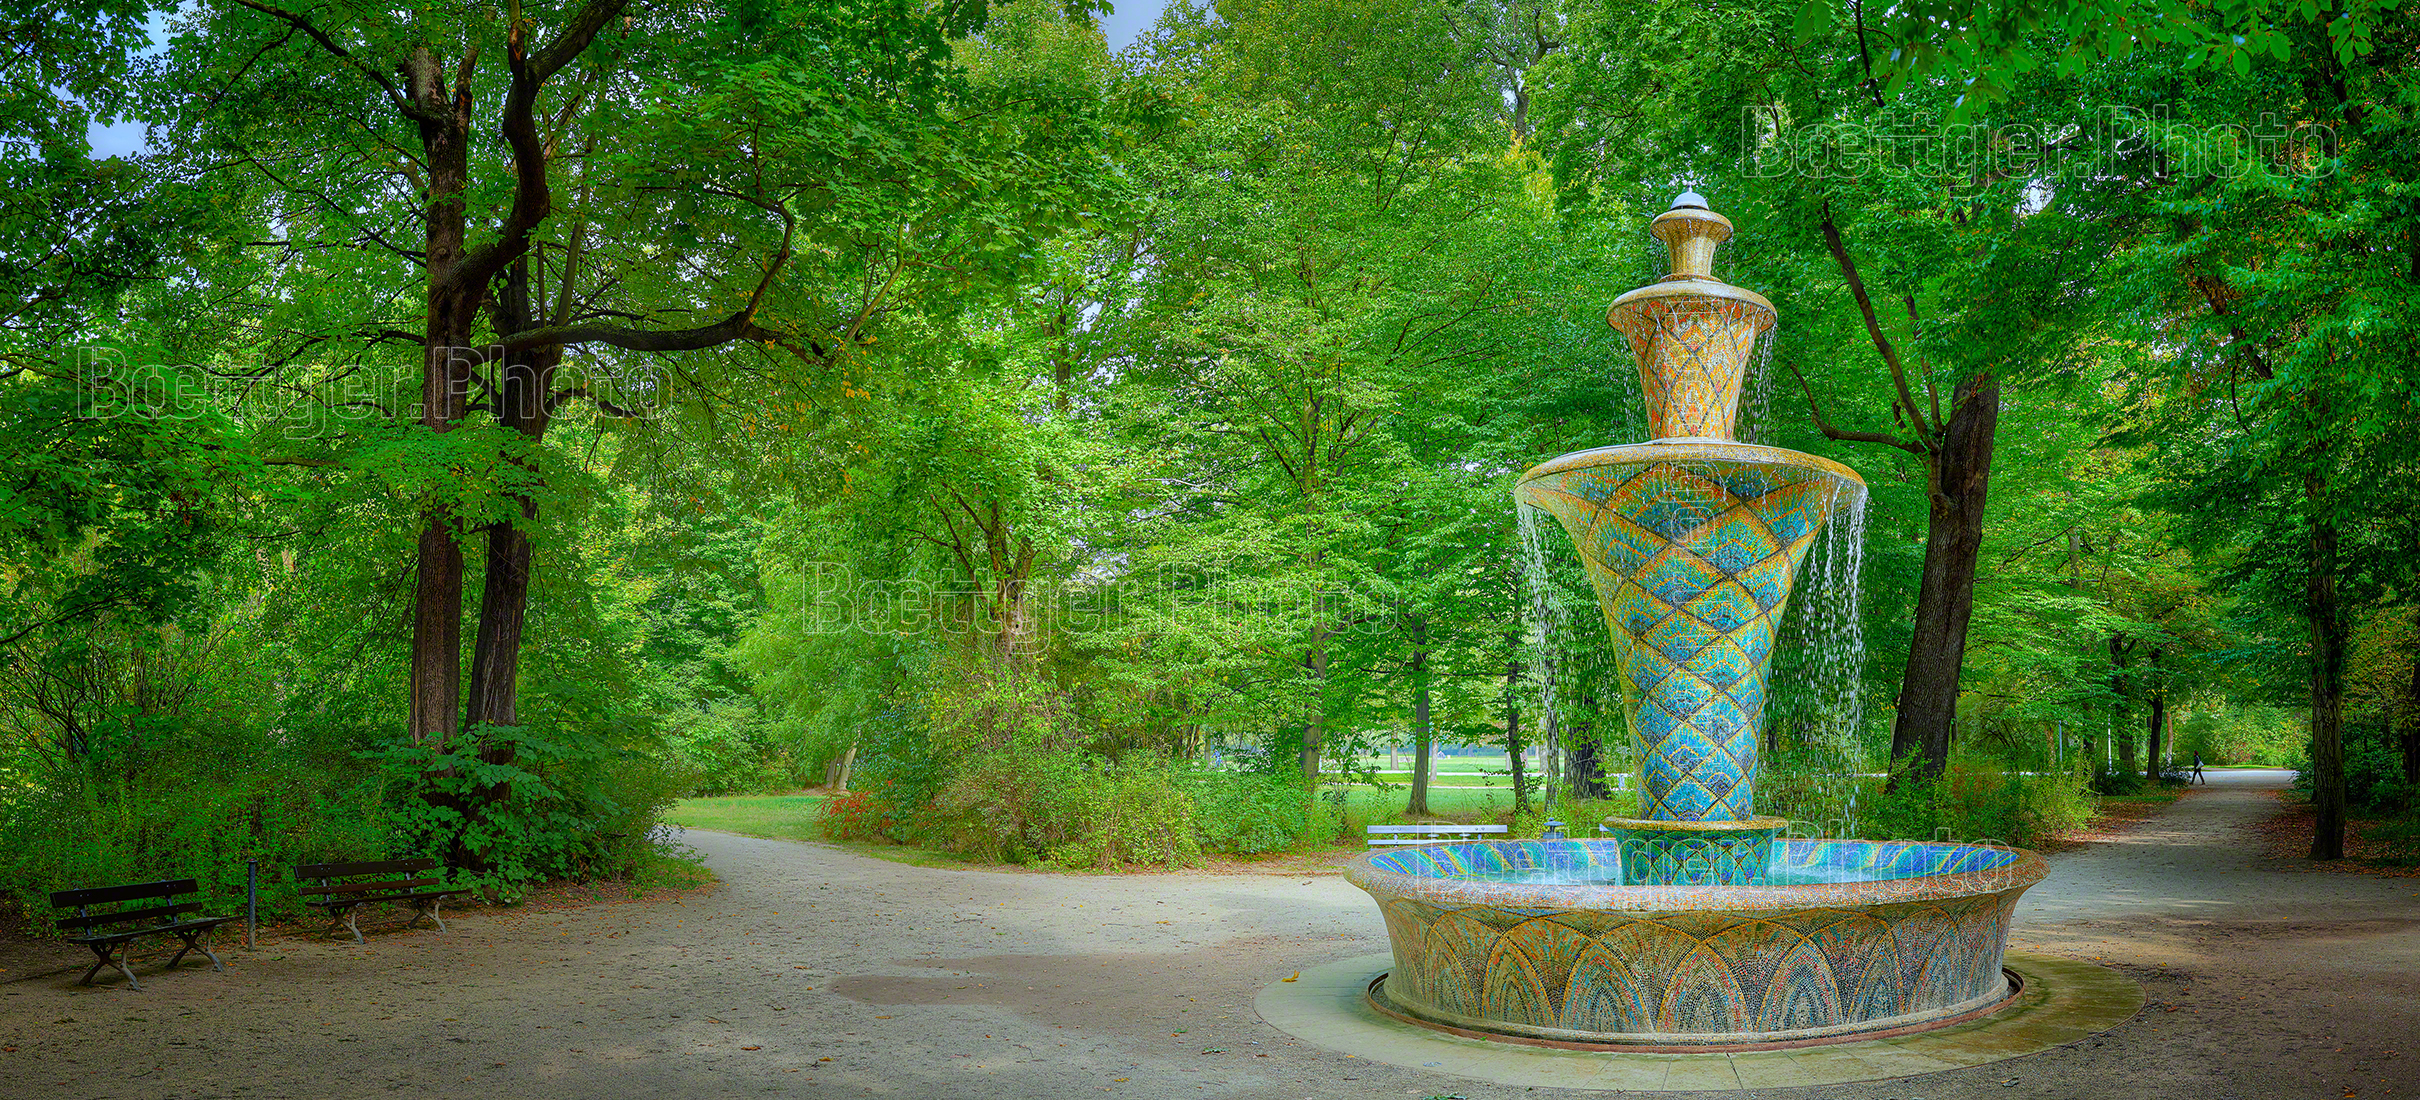 Großer Garten Dresden Mosaikbrunnen